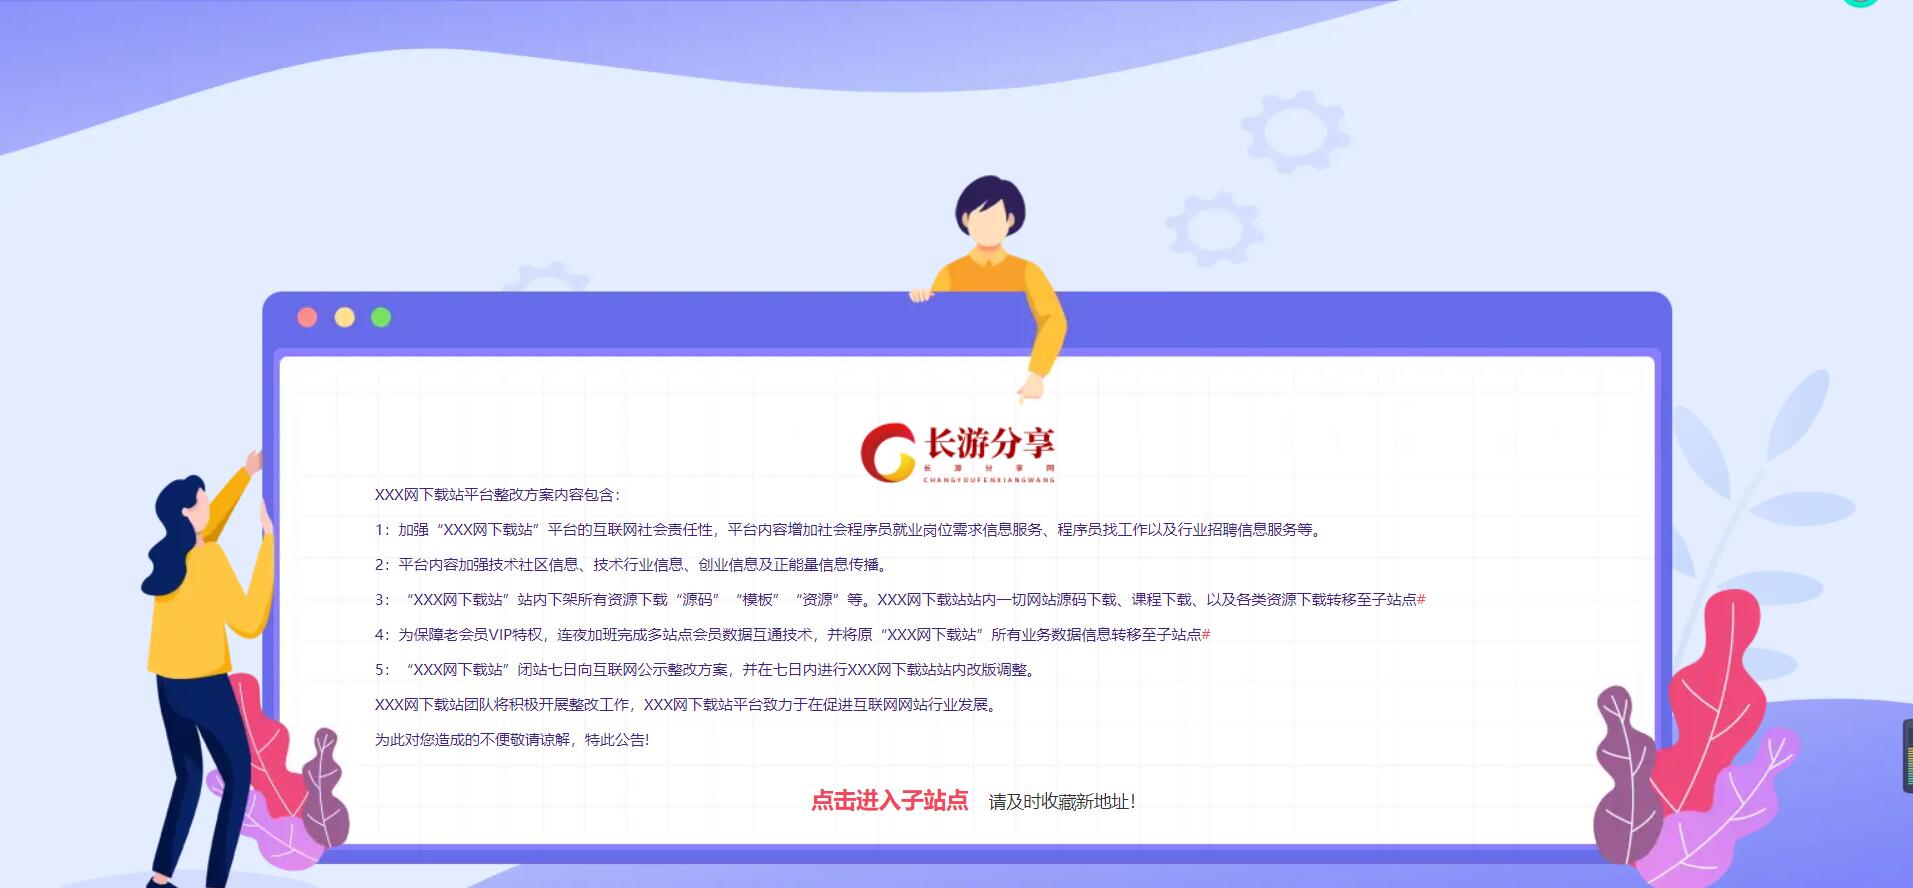 H5 网站停服维护公告页面源码-长游分享网